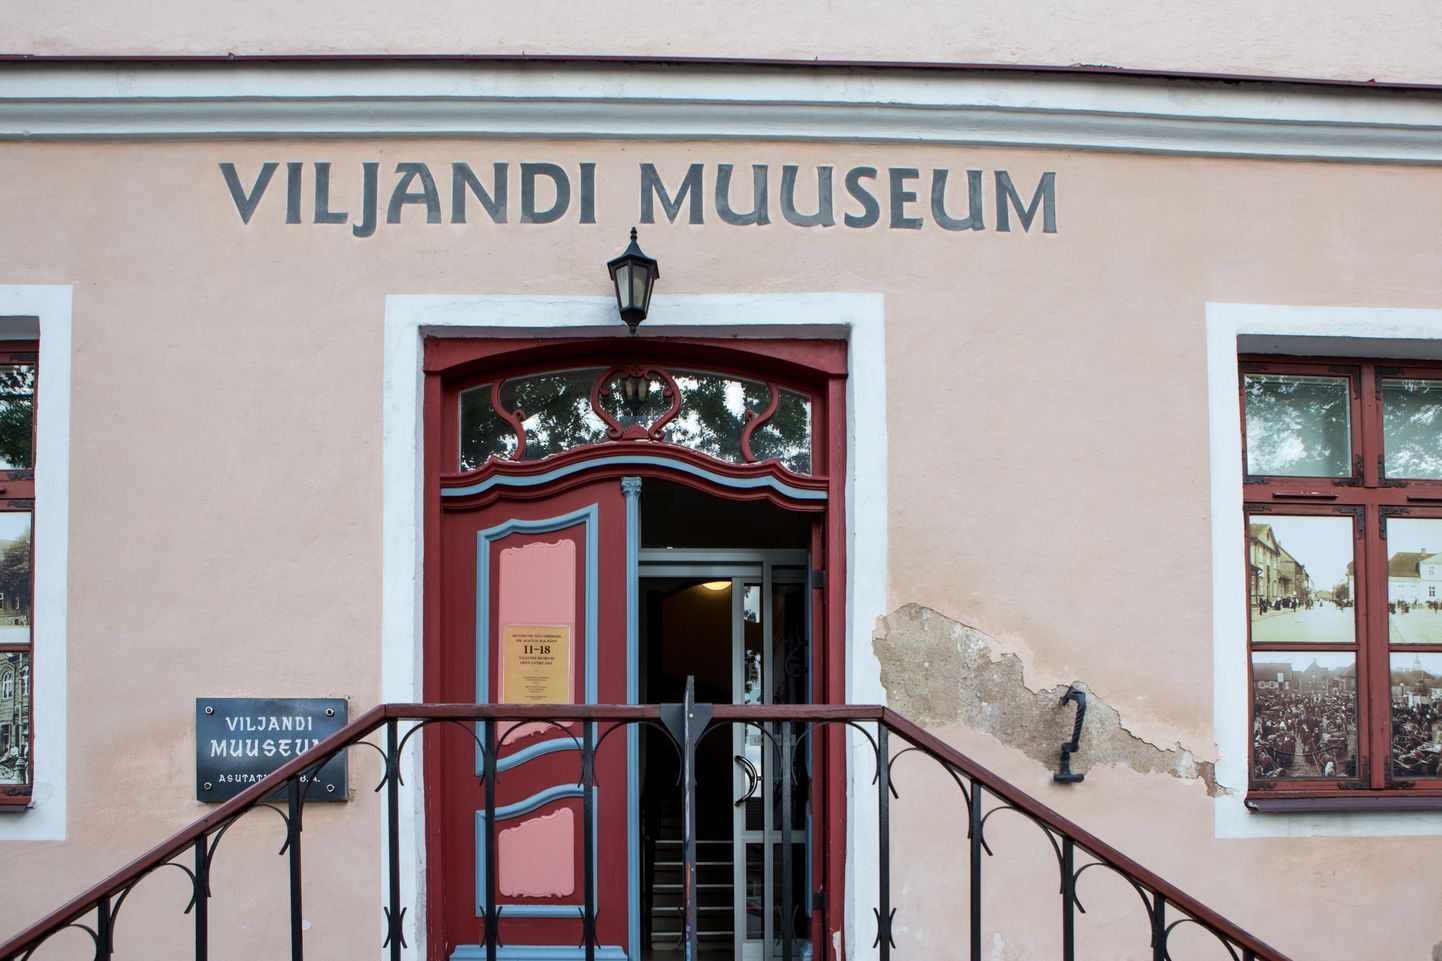 Viljandi muuseum

ELMO RIIG/SAKALA